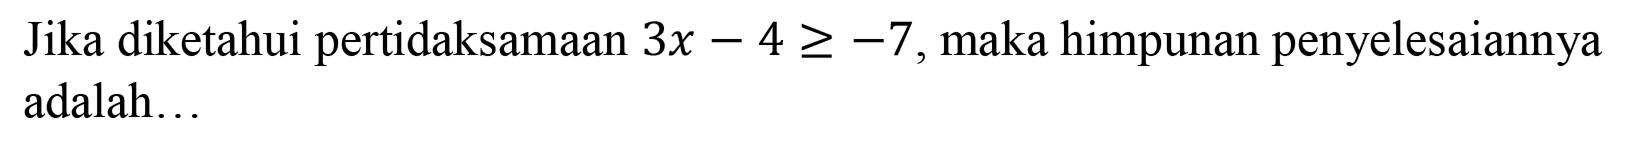 Jika diketahui pertidaksamaan 3x-4>=-7, maka himpunan penyelesaiannya adalah ...